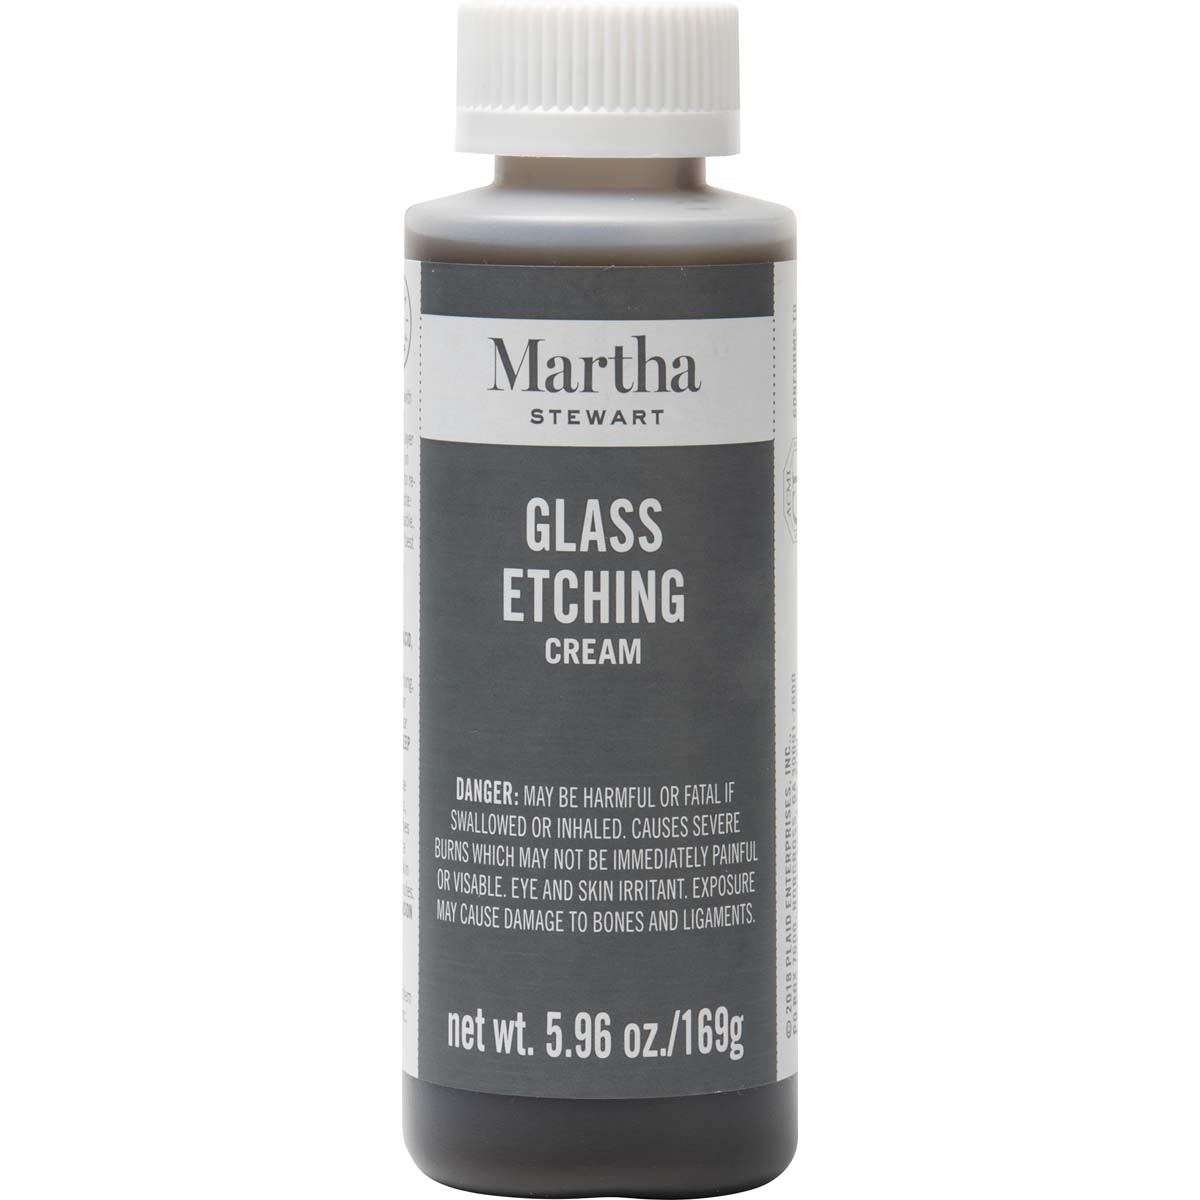 Martha Stewart ® Glass Etch Cream & Brush, 4 oz. - 33222